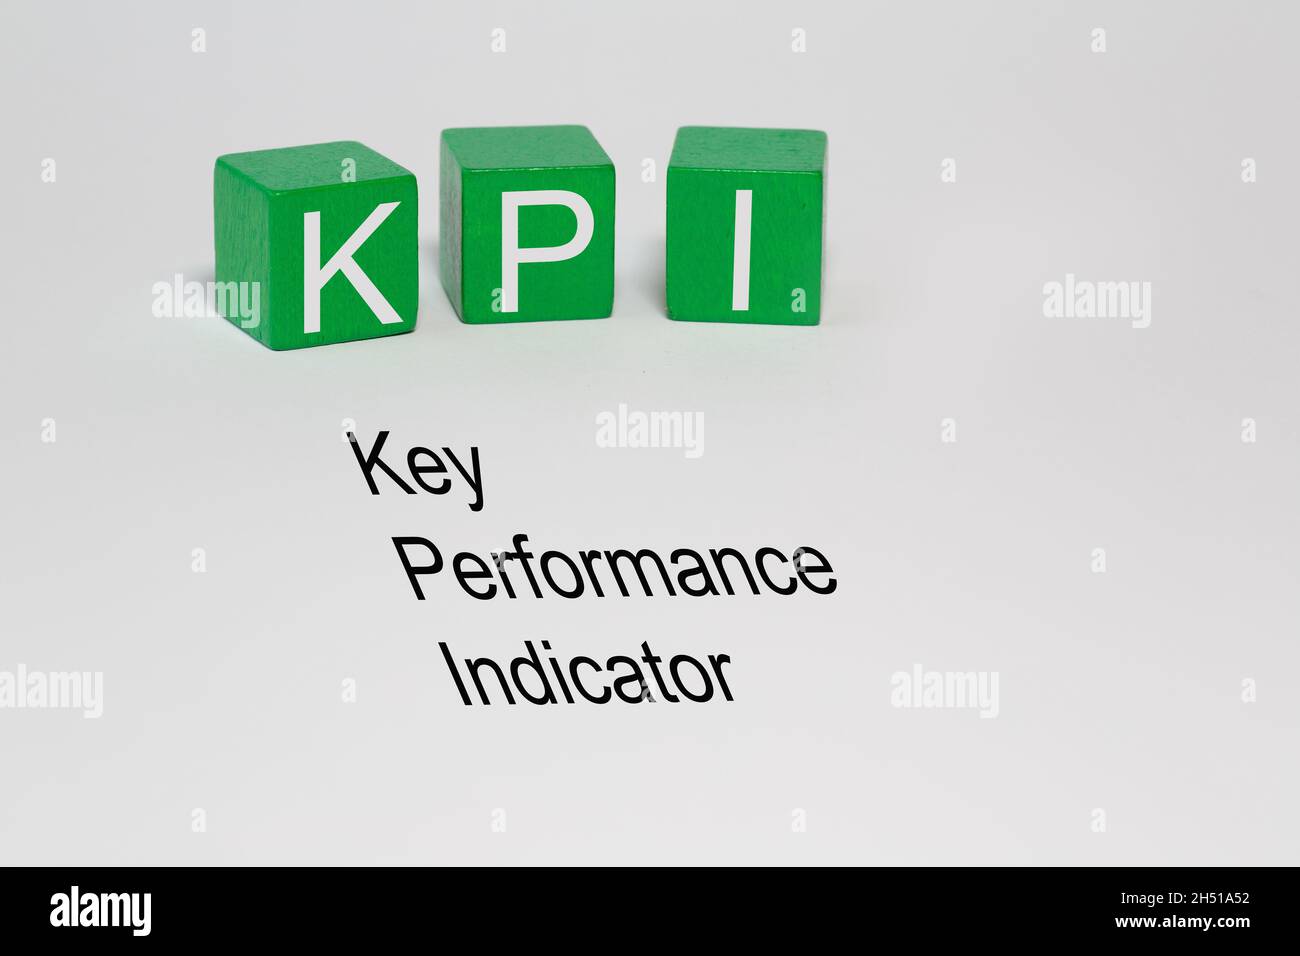 Trois blocs isolés avec les lettres KPI et le texte Key Performance Indicator sur la couche d'arrière-plan blanche Banque D'Images